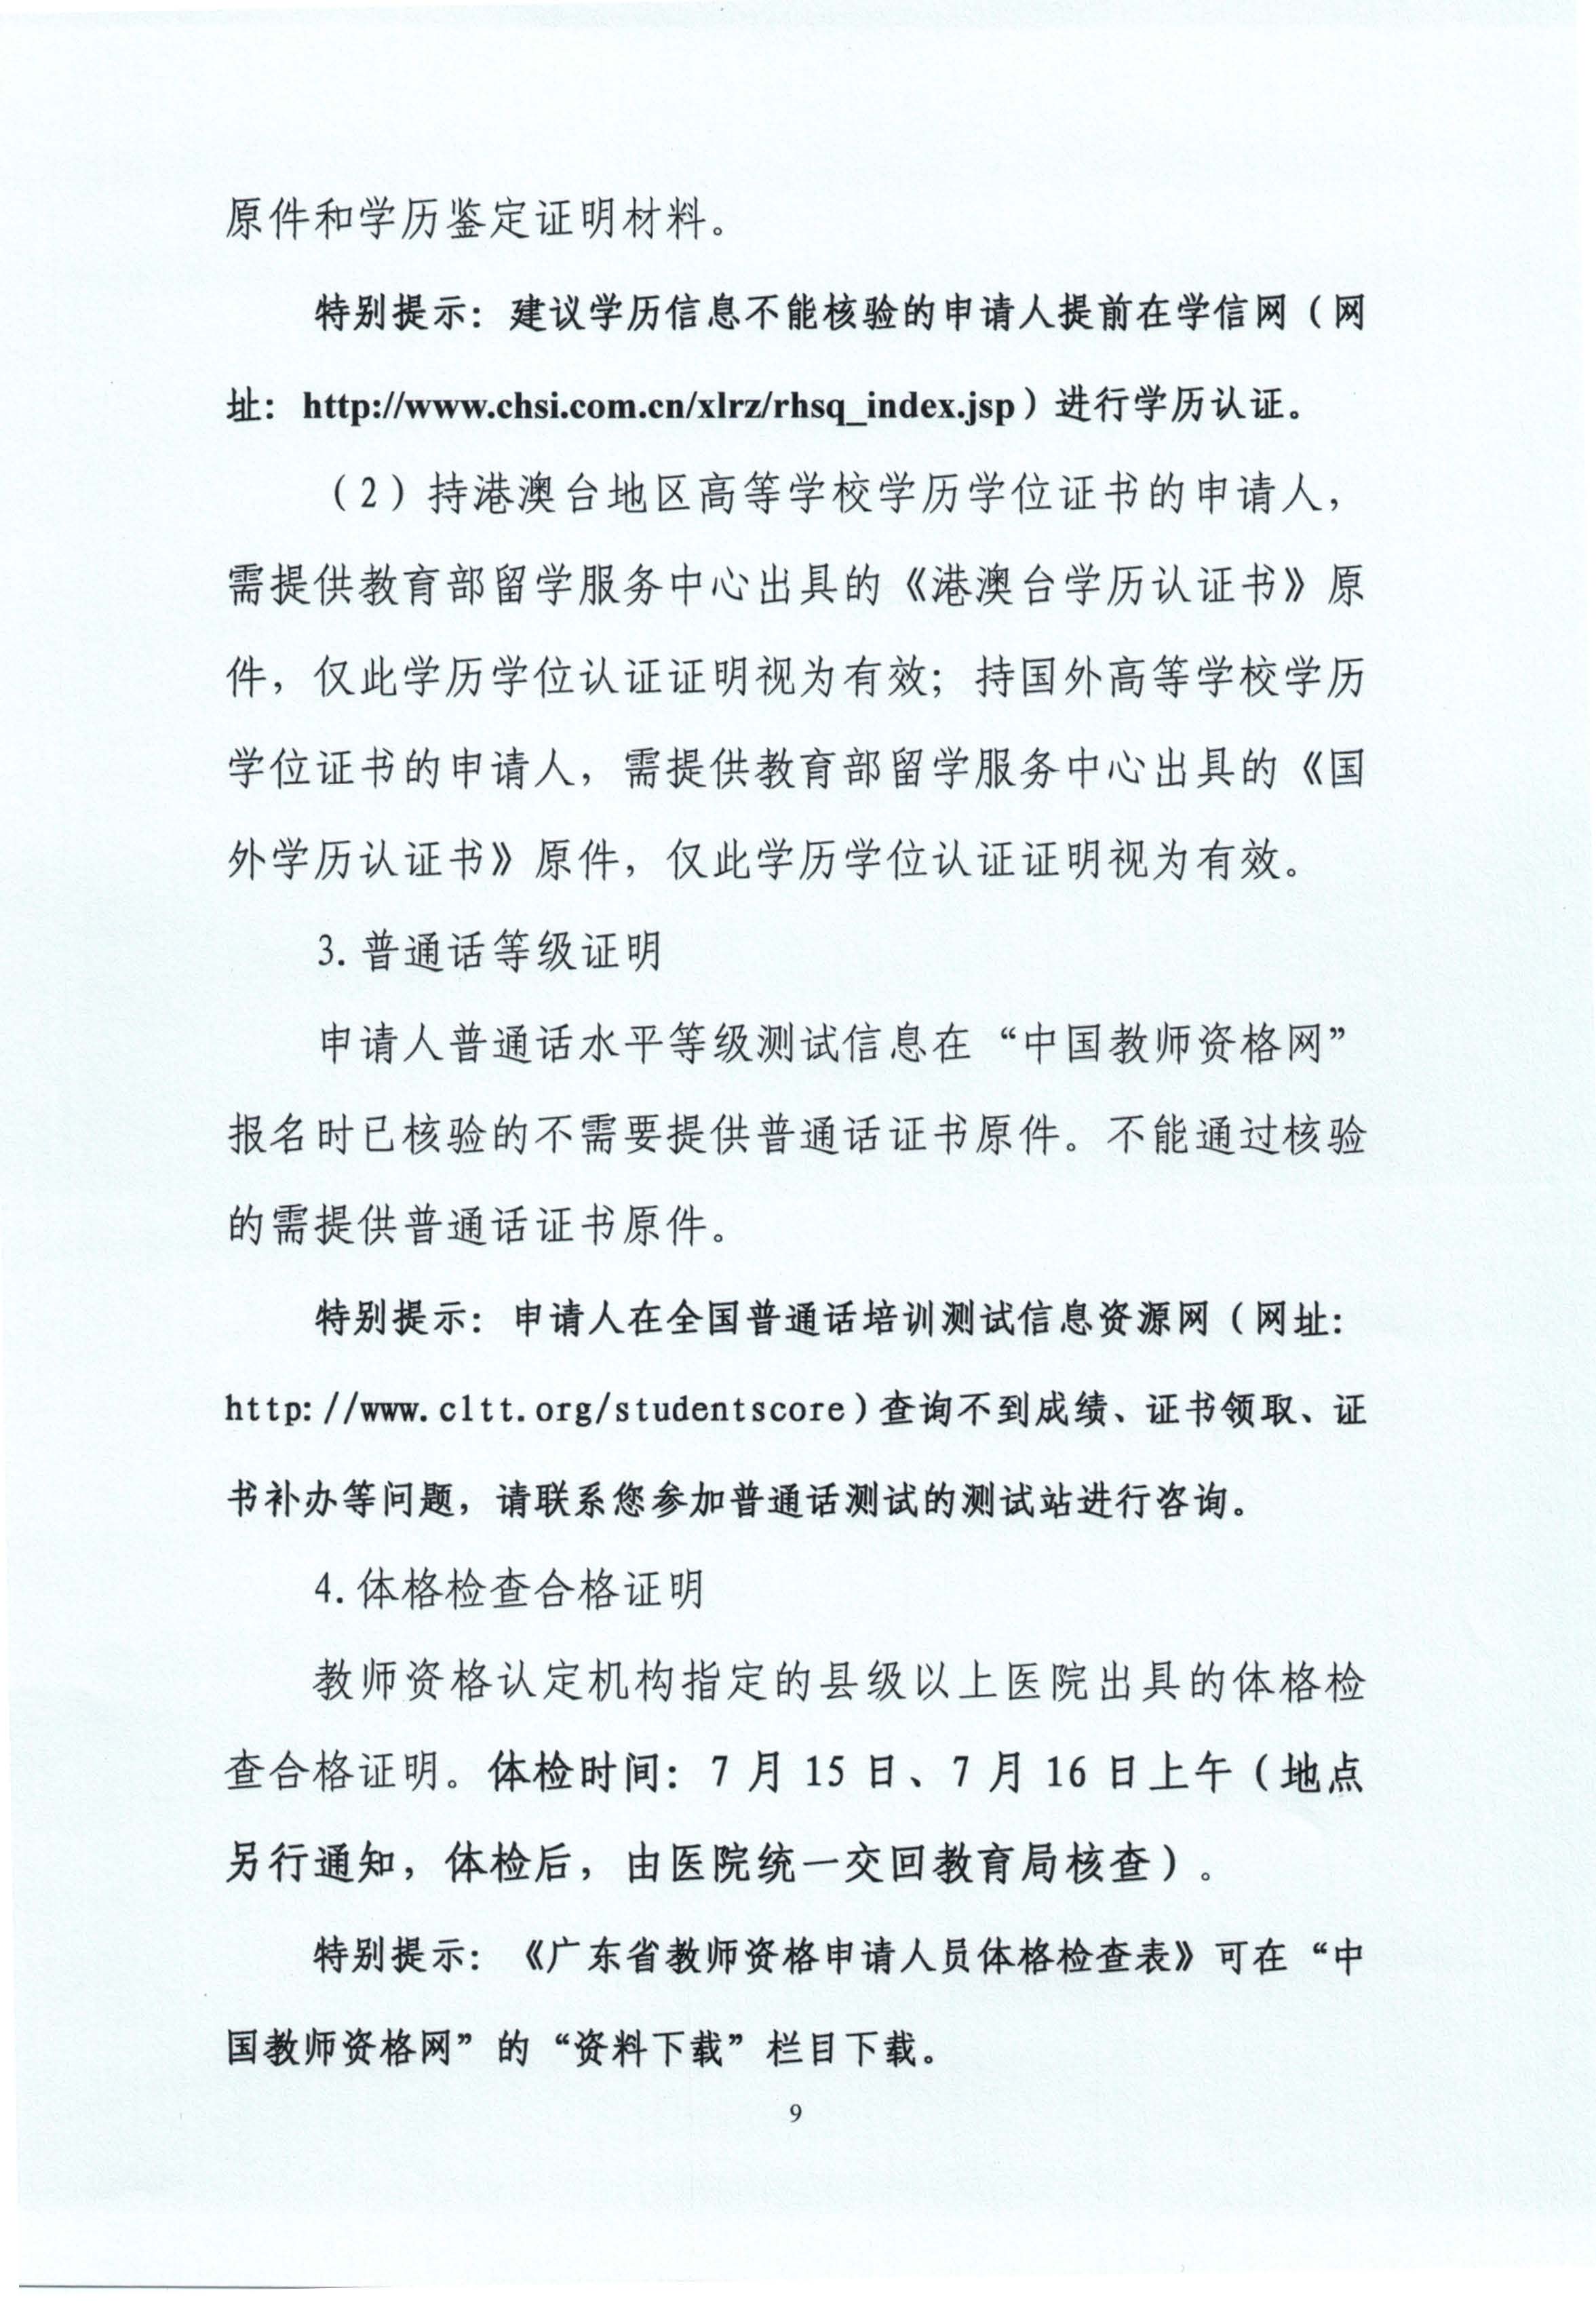 丰顺县2020年上半年中小学教师资格认定公告_页面_09.jpg